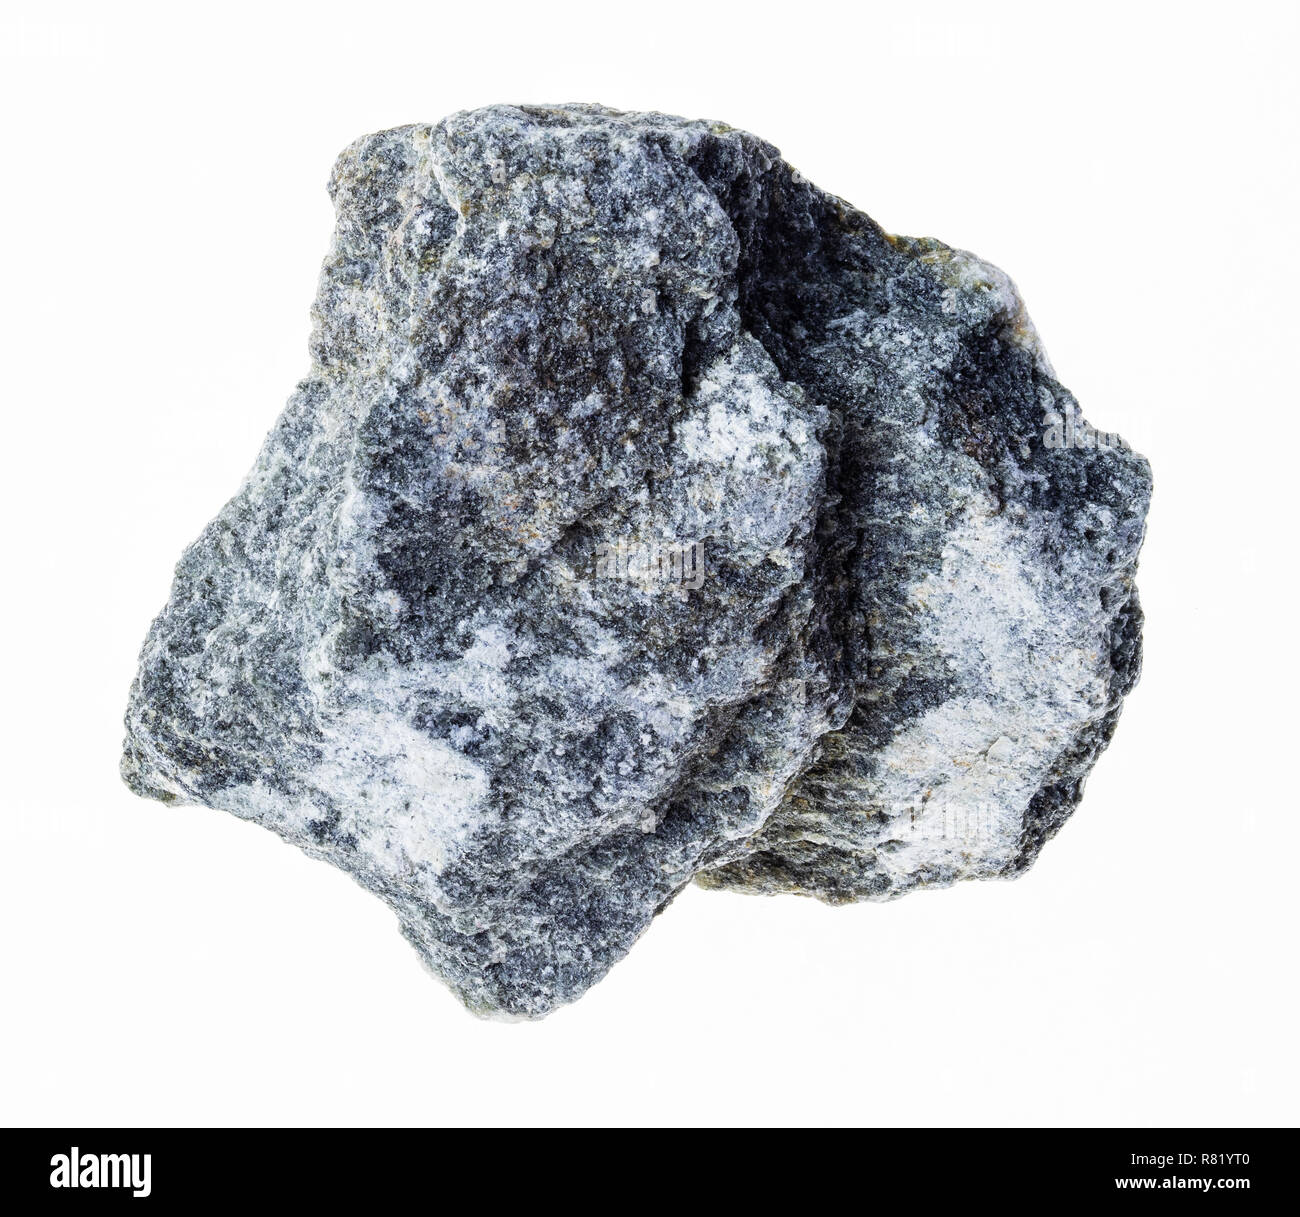 Makrofotografie von natürlichen Mineral aus geologische Sammlung - grobe Talkum - Schiefer (Speckstein) Stein auf weißem Hintergrund Stockfoto